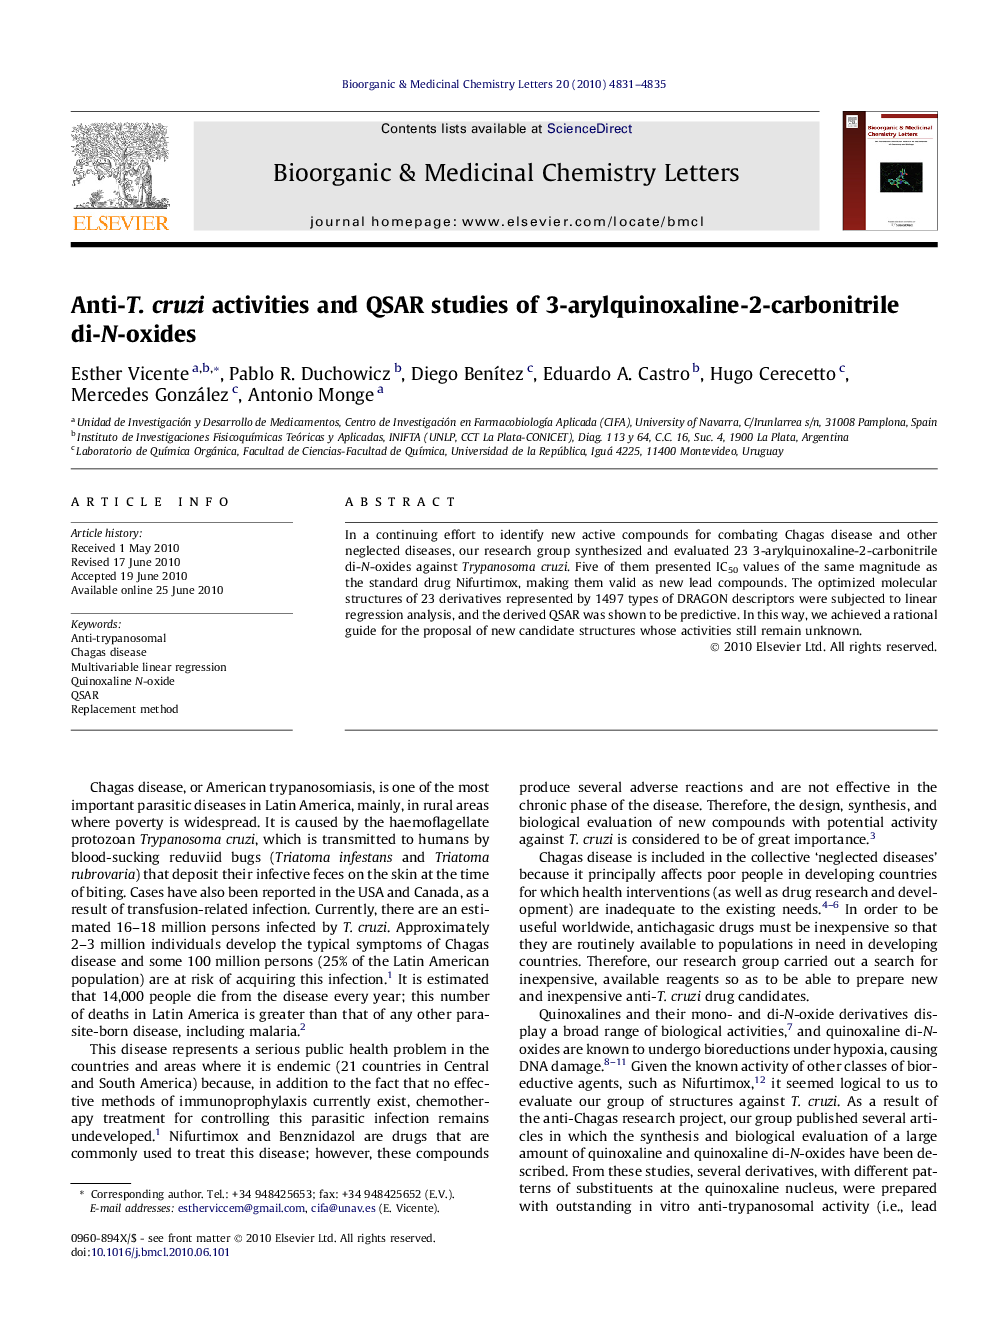 Anti-T. cruzi activities and QSAR studies of 3-arylquinoxaline-2-carbonitrile di-N-oxides